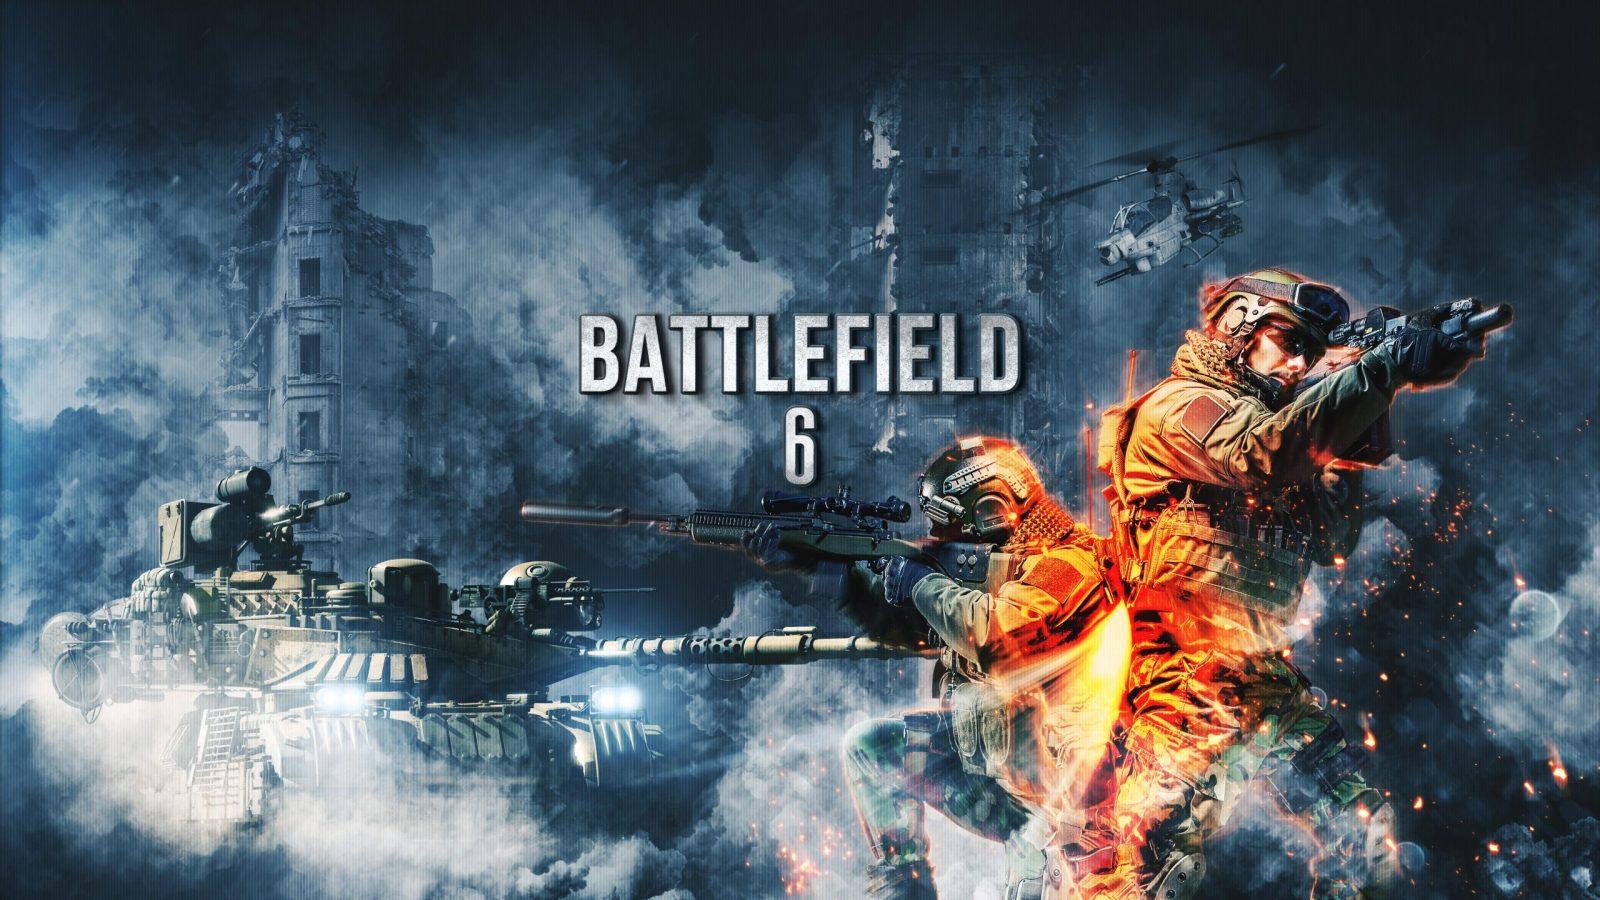 Battlefield 1 Wallpapers in Ultra HD  4K  Gameranx